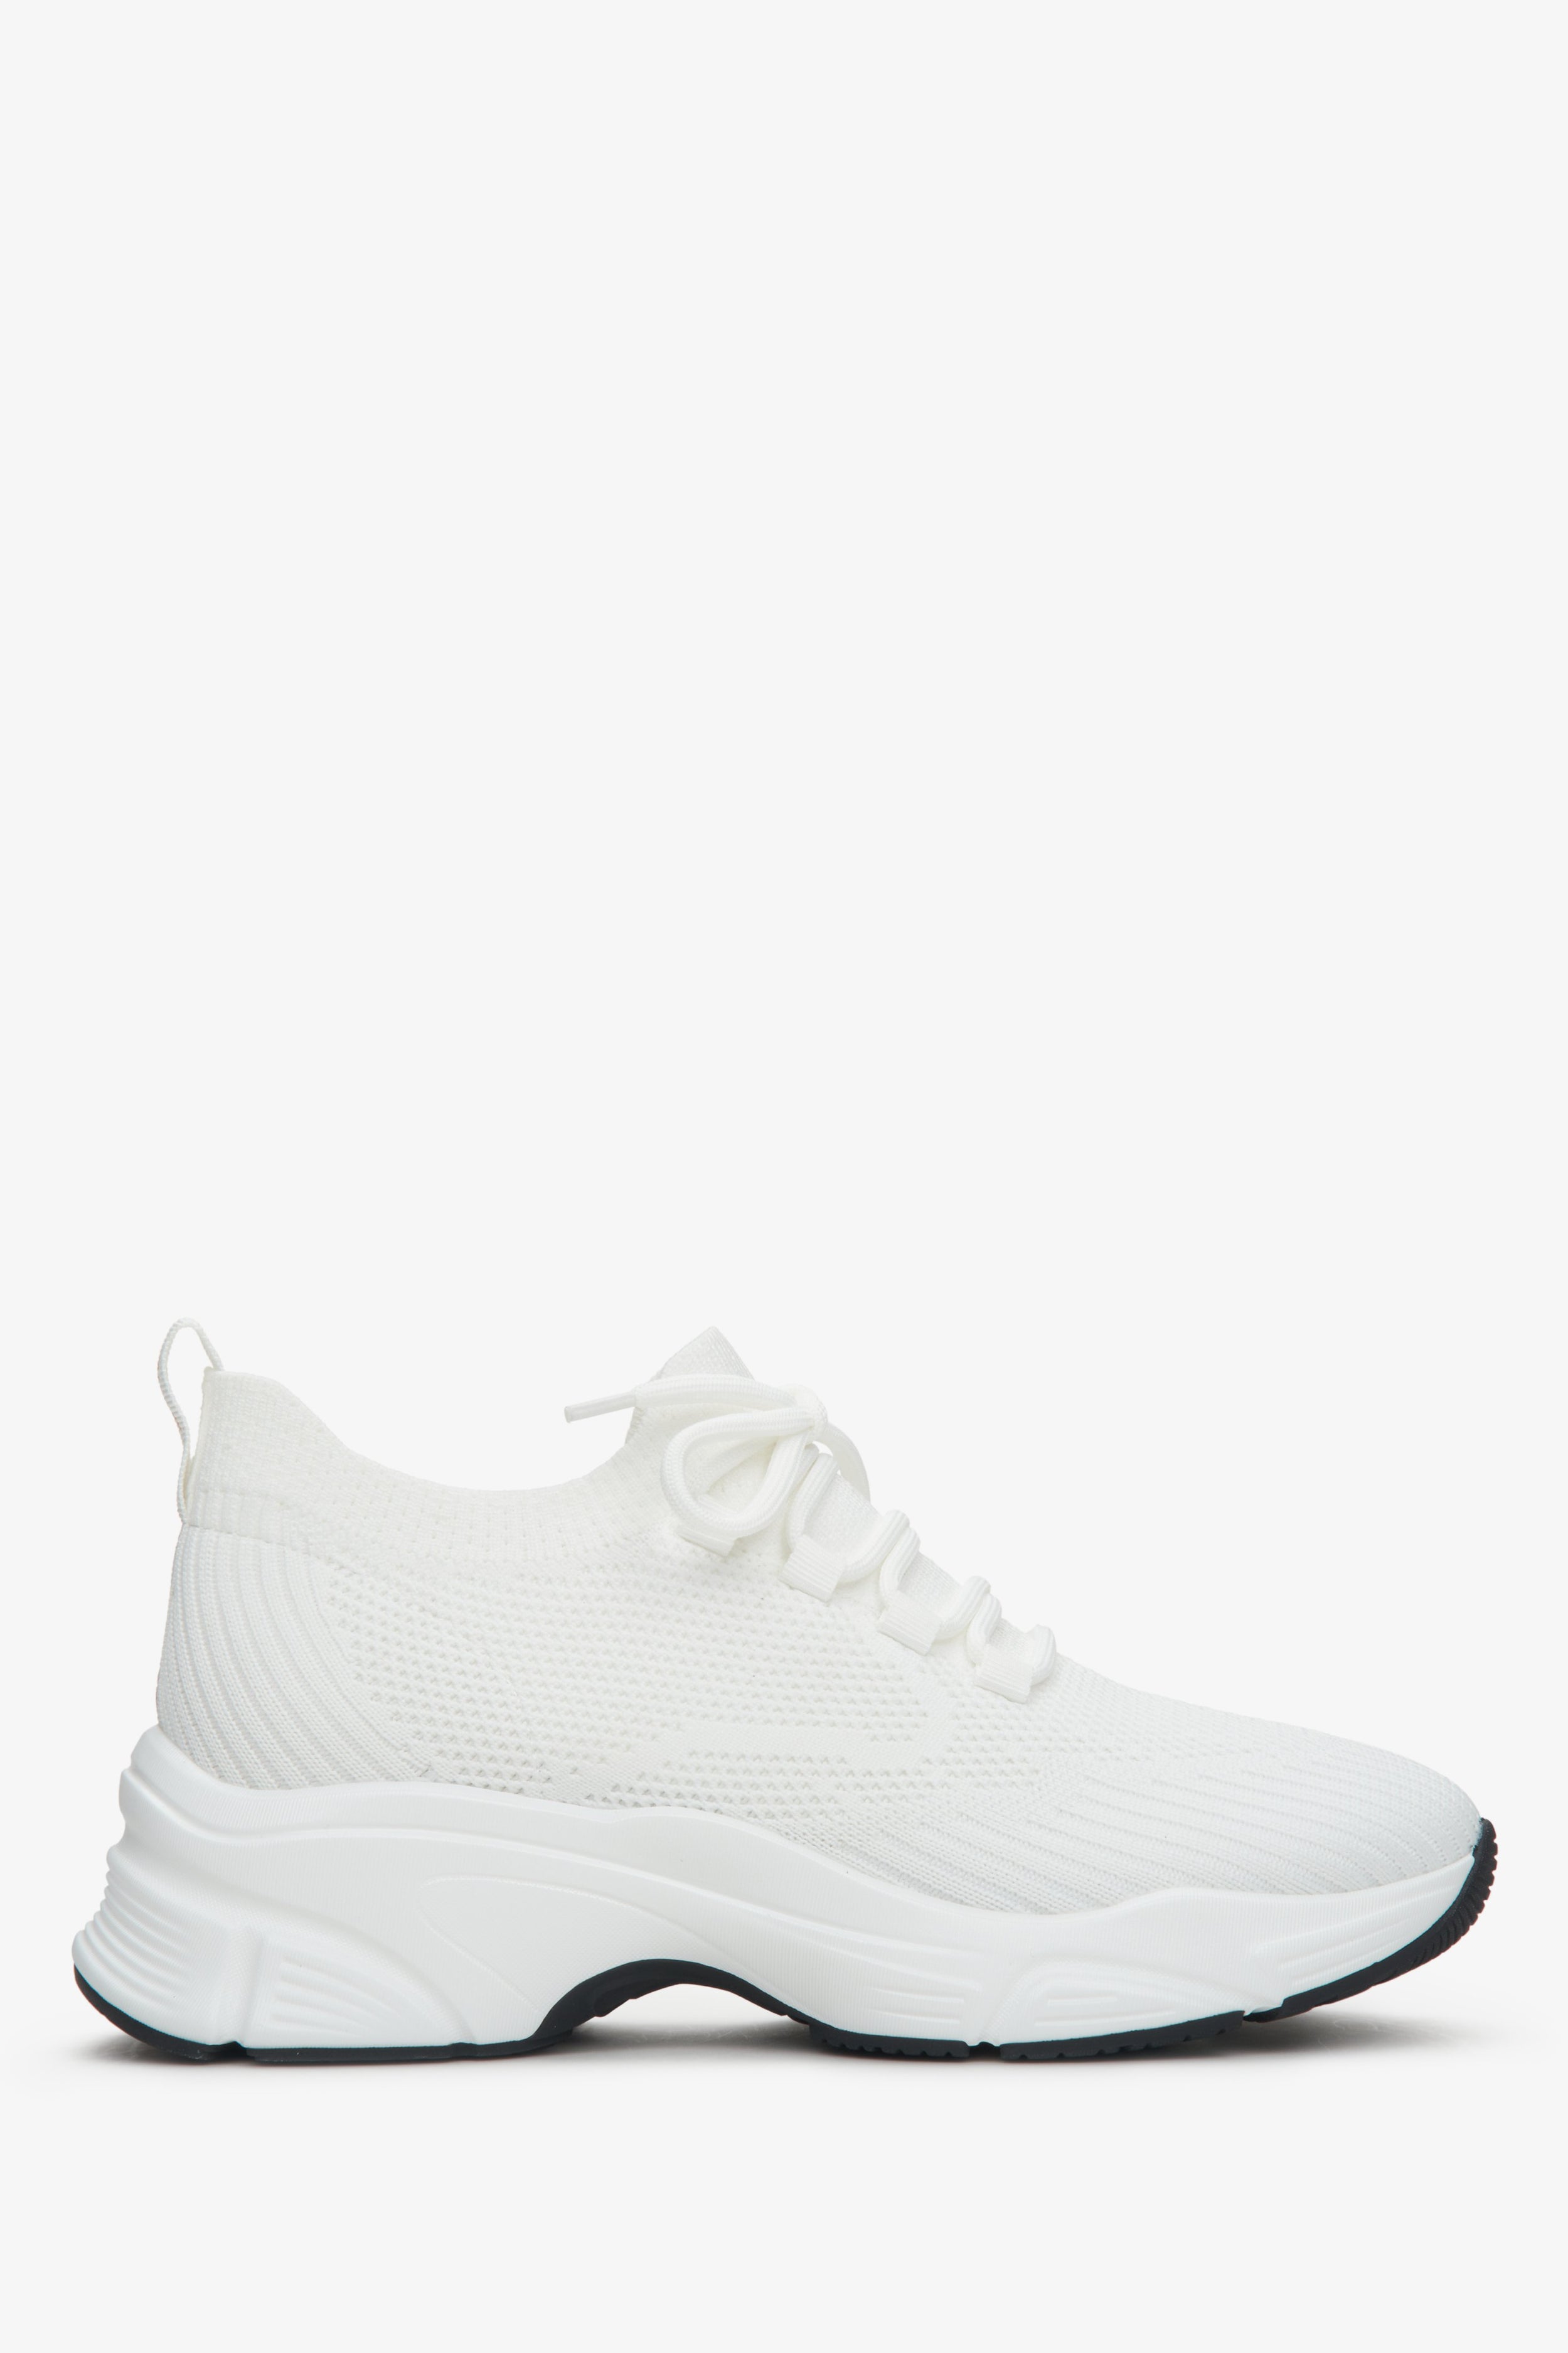 Estro: Białe sneakersy damskie z siateczki na elastycznej podeszwie